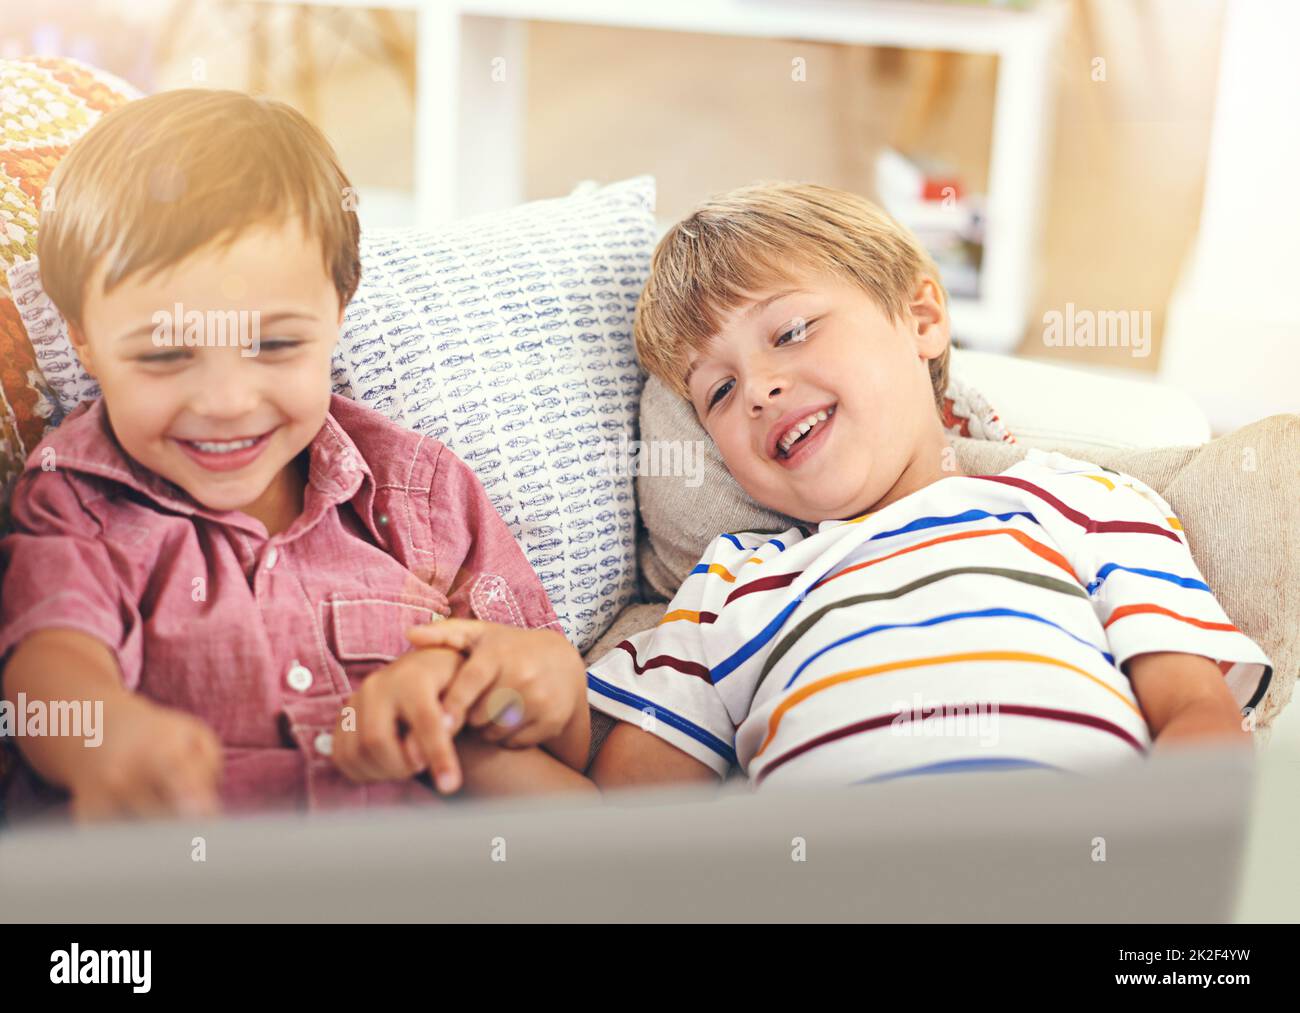 Vuoi vedere tutti i miei giochi. Scatto di due ragazzini che usano un computer portatile insieme. Foto Stock